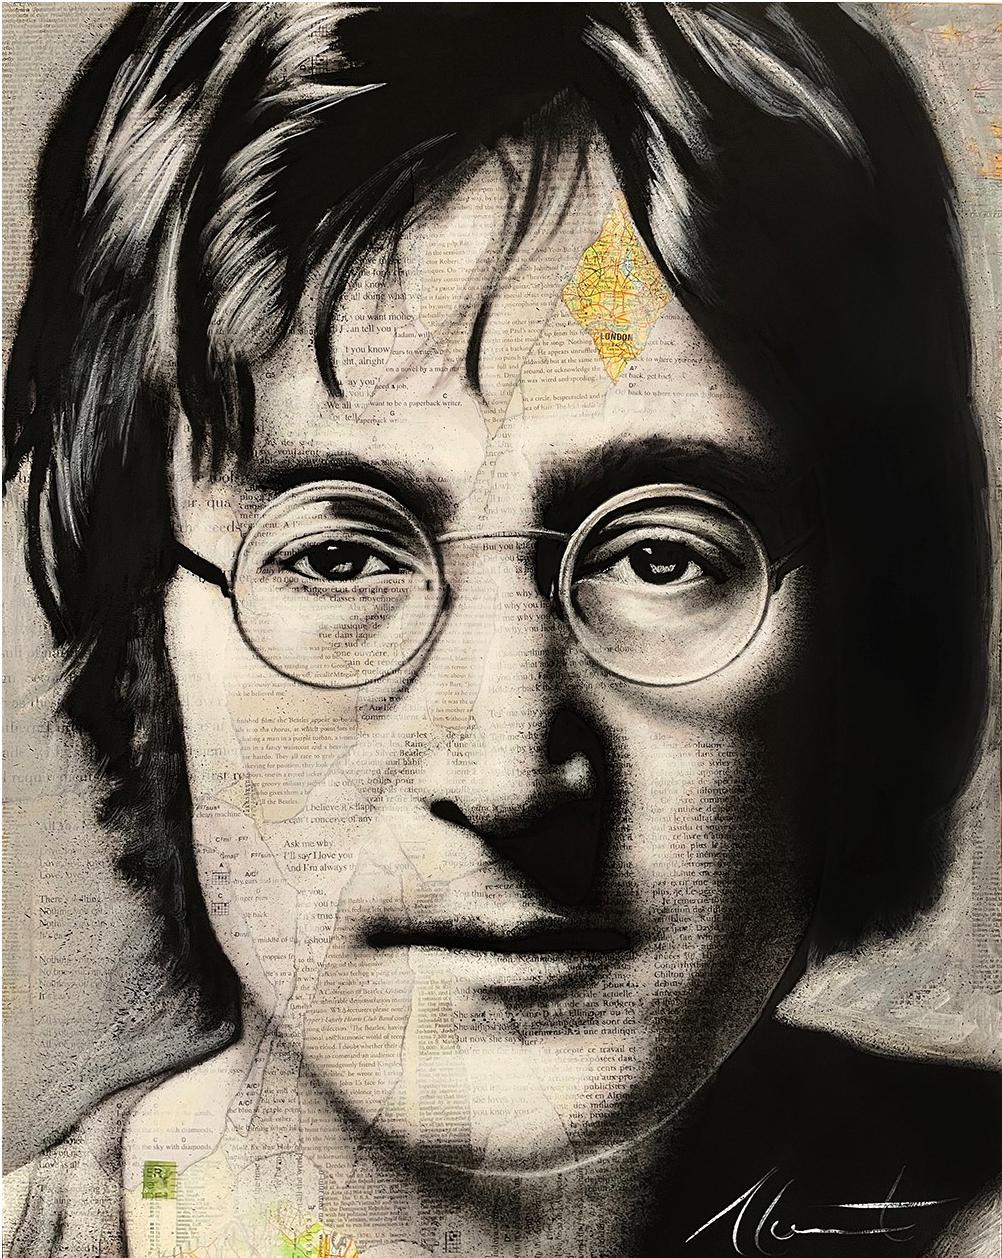 Did John Lennon make art?